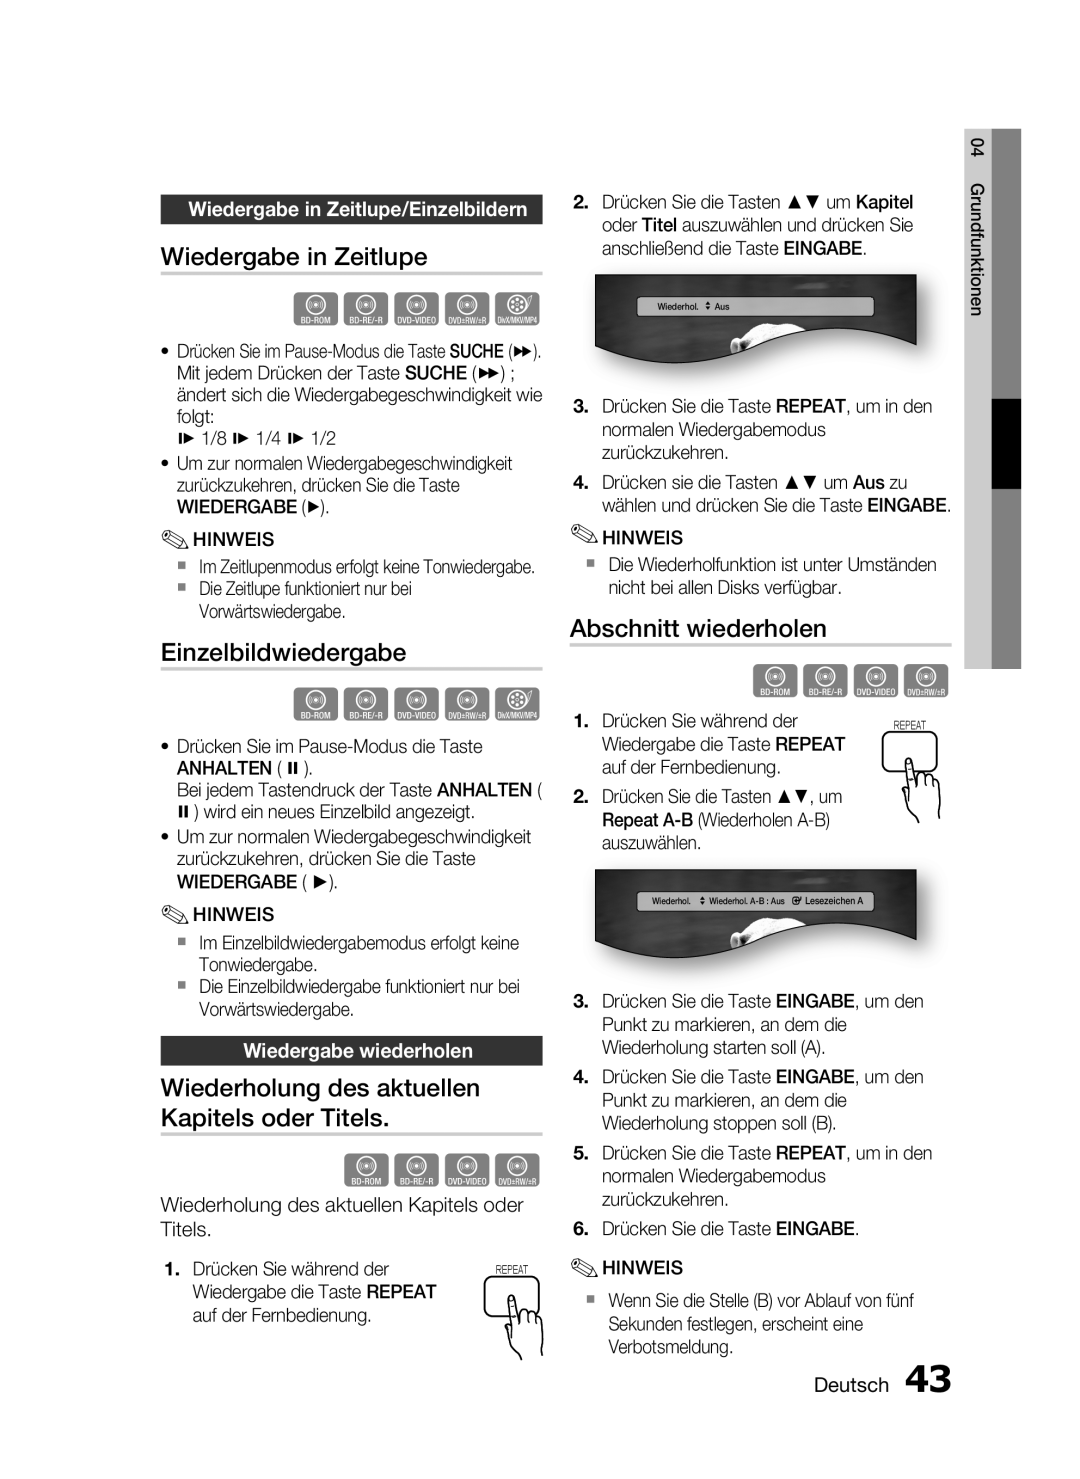 Samsung HT-C6200/XEF Wiedergabe in Zeitlupe, Einzelbildwiedergabe, Wiederholung des aktuellen Kapitels oder Titels, hzZyx 